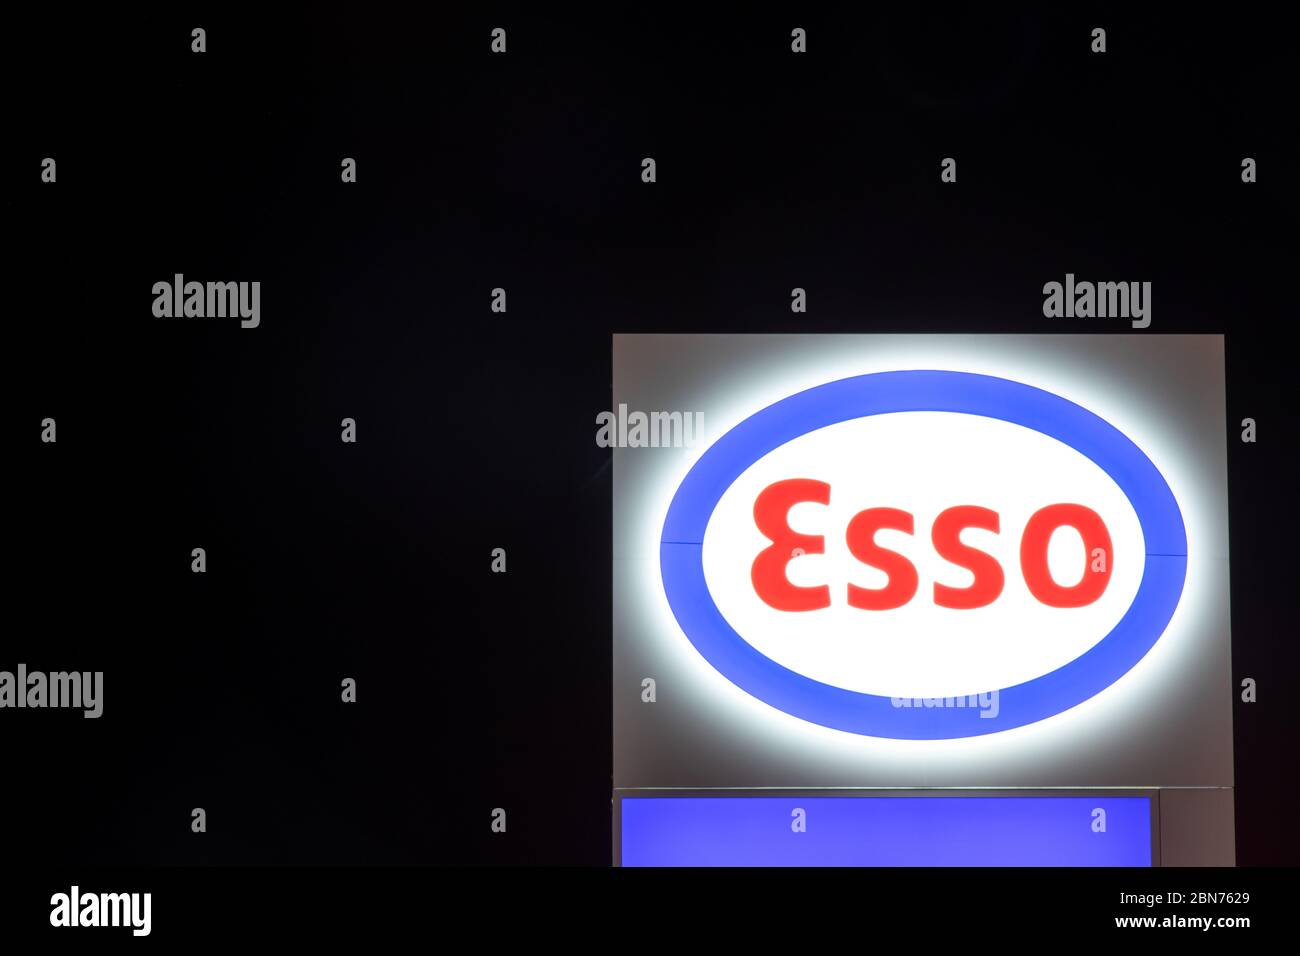 Le logo Esso, un nom commercial d'ExxonMobil vu la nuit au sommet d'une station-service près de Toronto Pearson. Banque D'Images